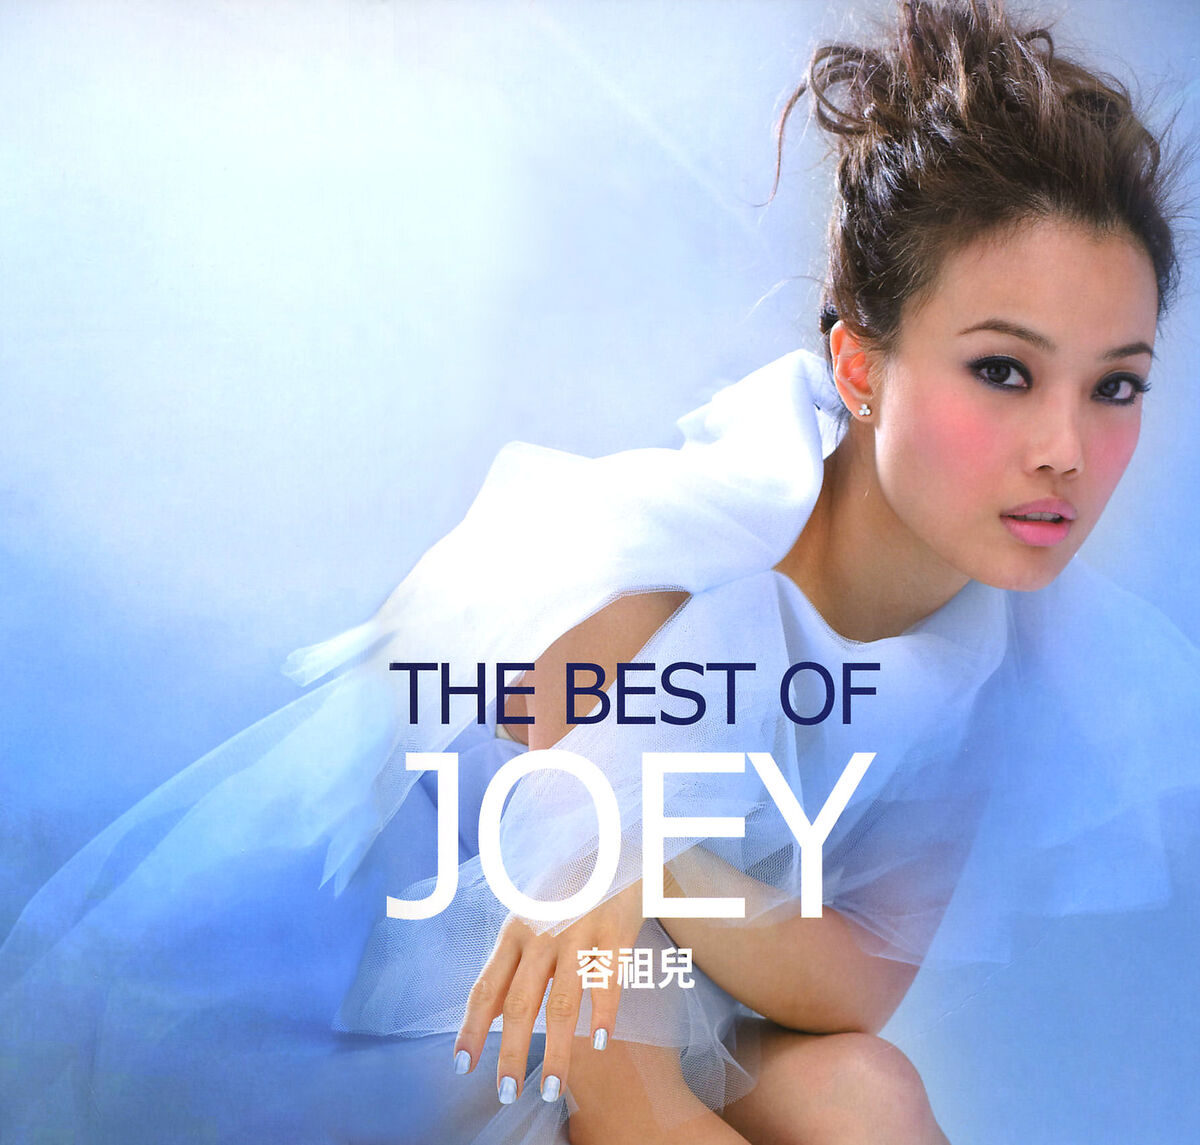 The Best of Joey (Vinyl LP) | Joey Yung Wiki | Fandom